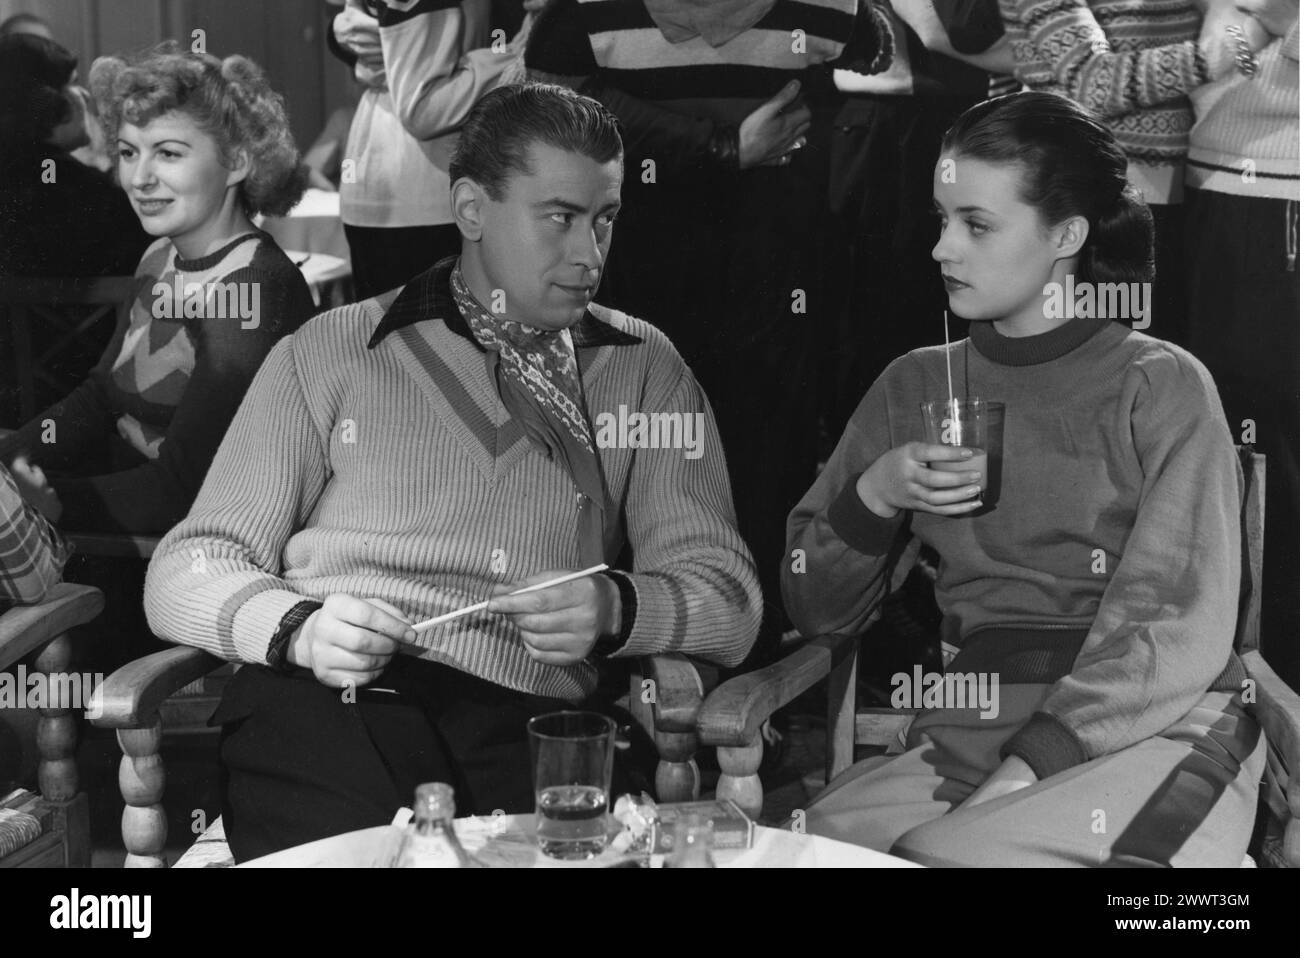 Une scène de l'actrice française JEANNE MOREAU avec JEAN-PIERRE KERIEN dans son premier film DERNIER AMOUR 1949 (LAST LOVE) réalisateur JEAN STELLI Consortium de Productions de films / aime Frapin Banque D'Images